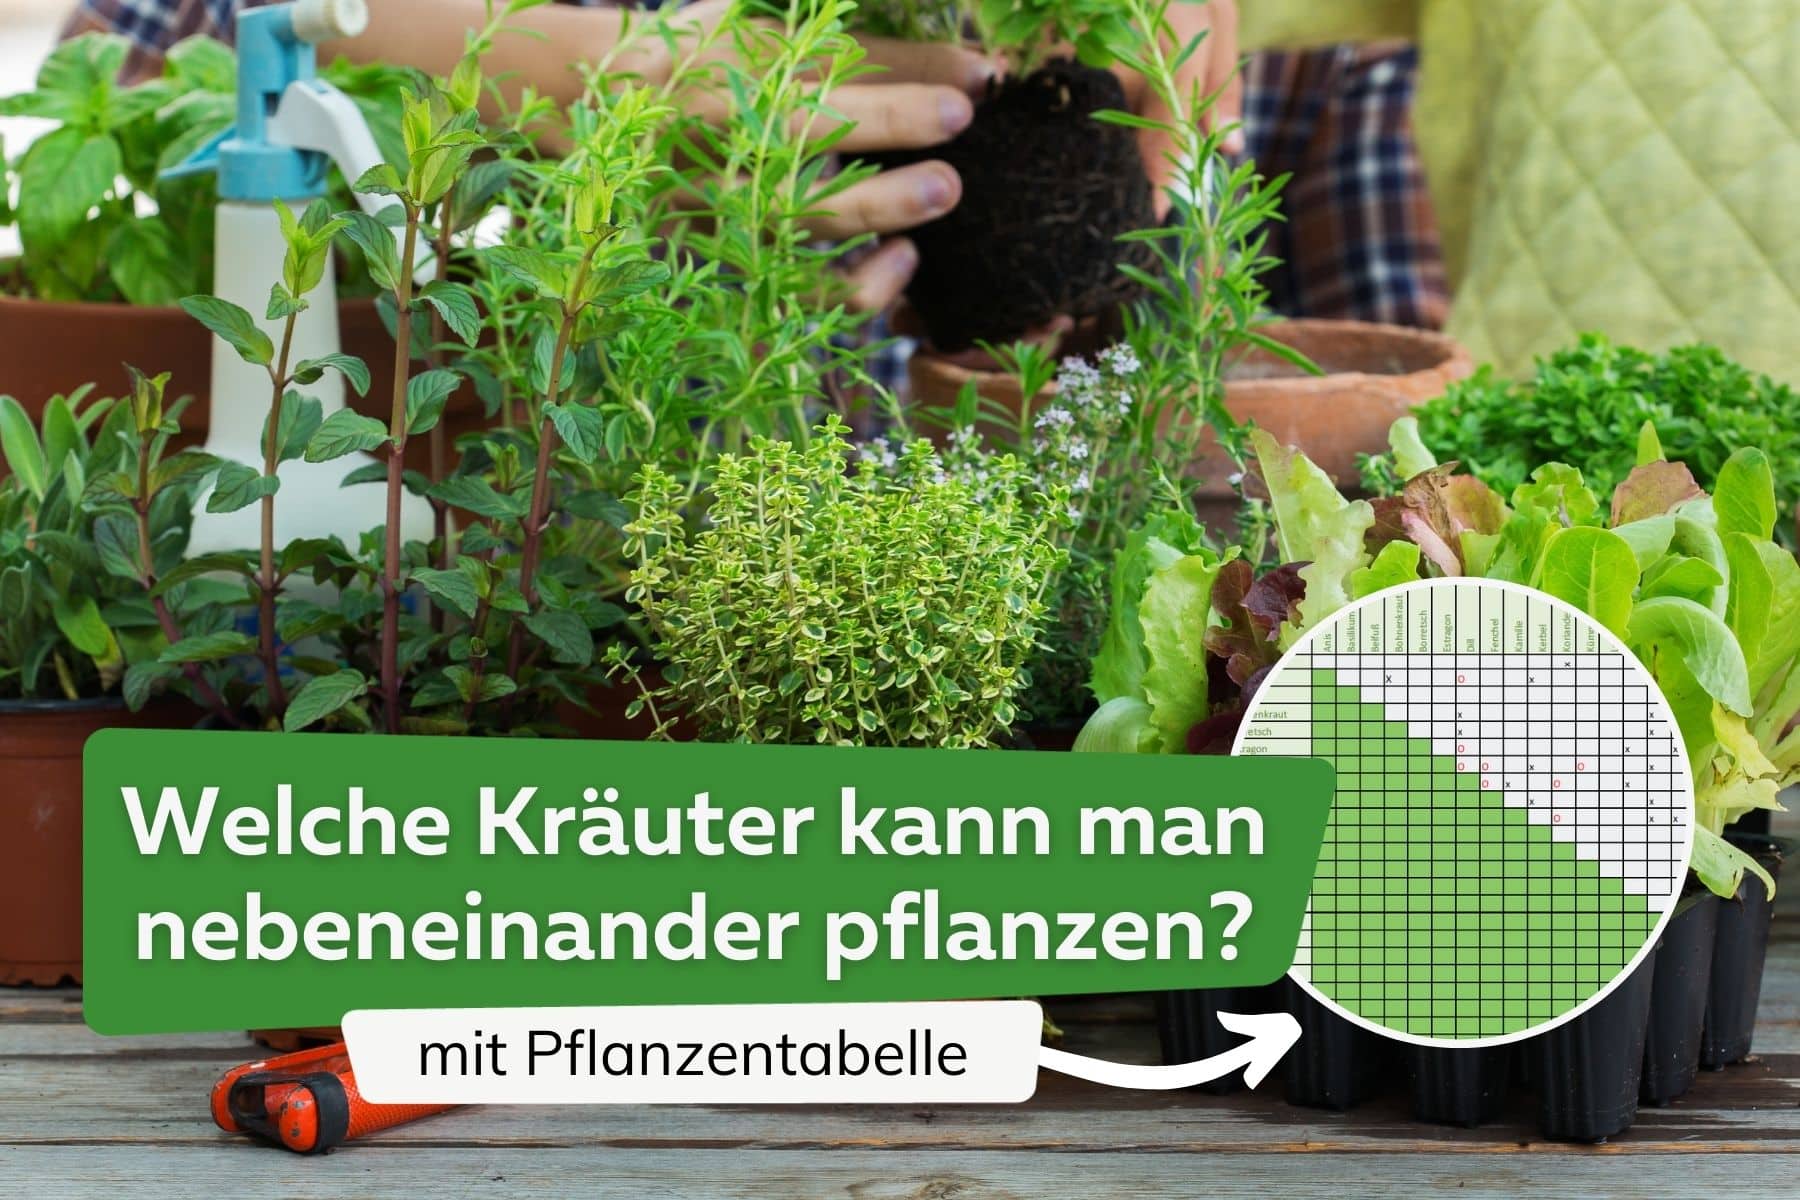 ¿Qué hierbas van juntas una al lado de la otra? mesa de plantas